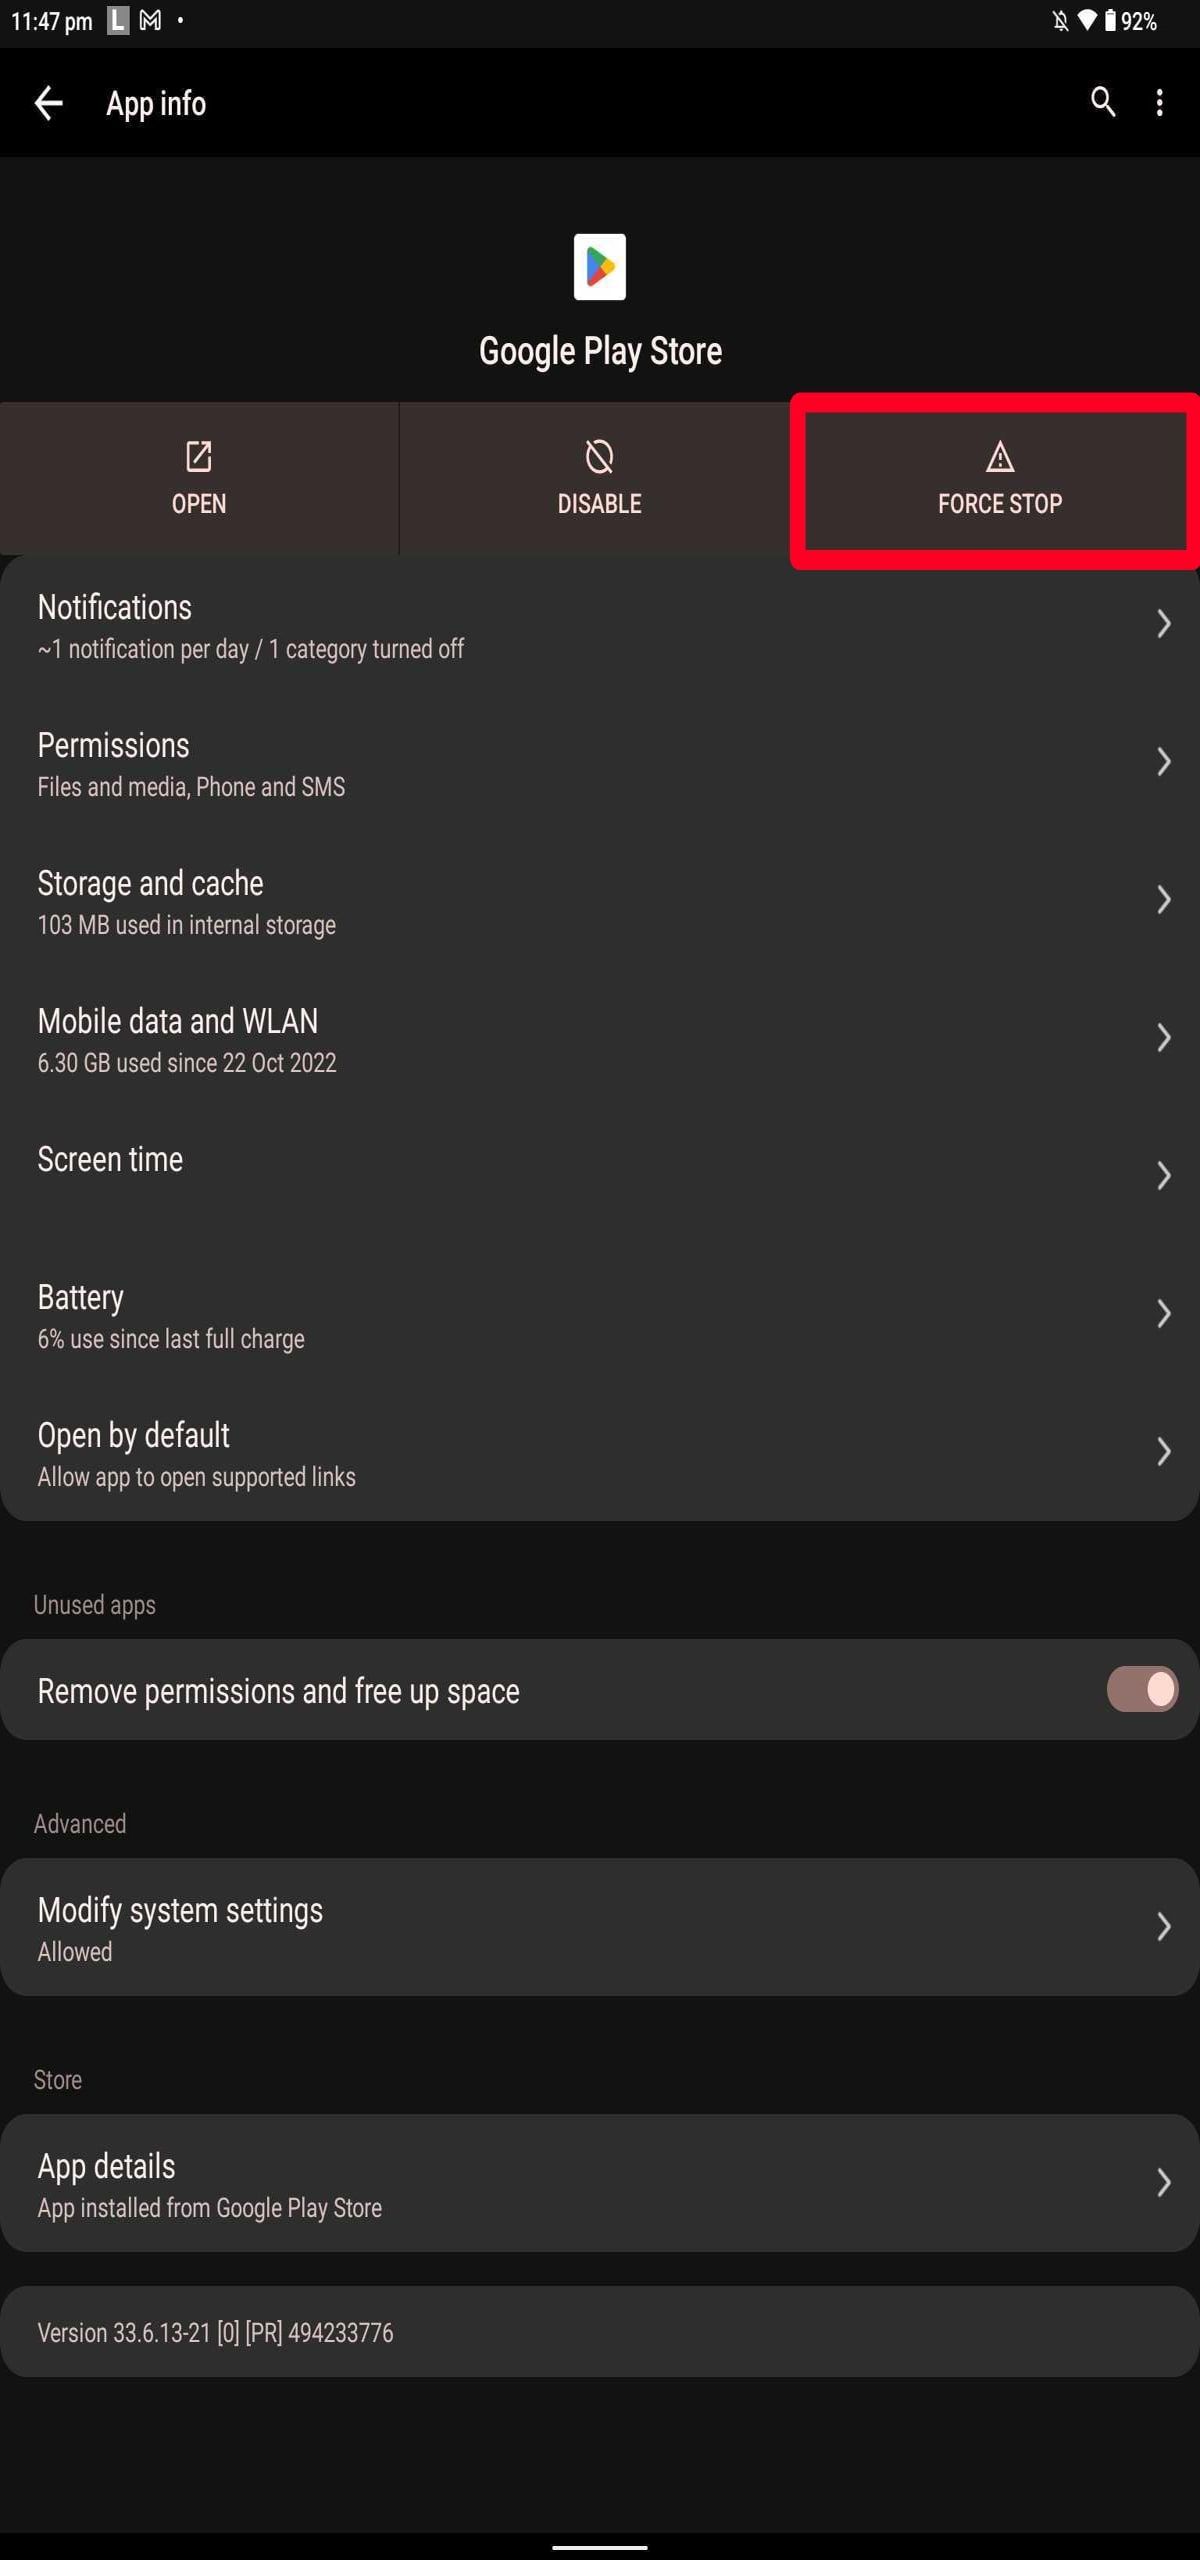 contorno de retângulo vermelho destacando a opção de parada forçada no menu de informações do aplicativo no tablet Android